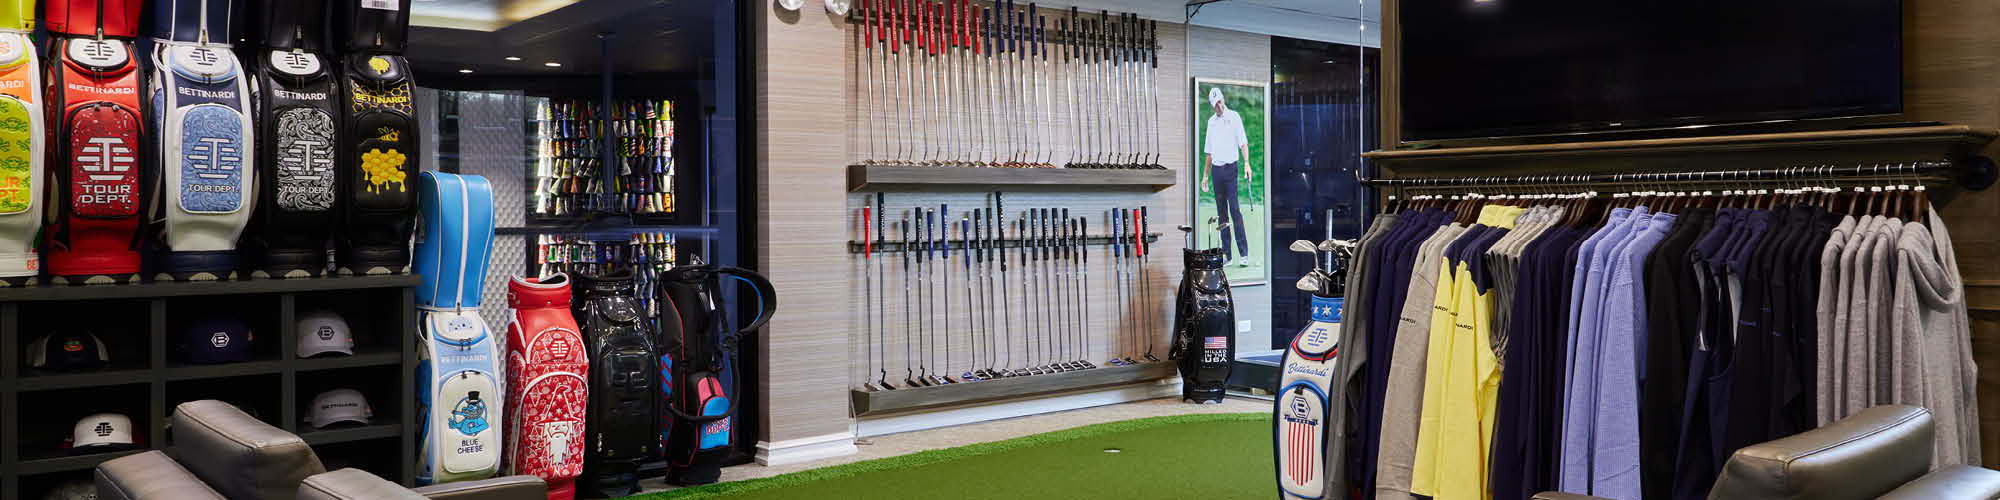 Bettinardi Golf's Studio B Store